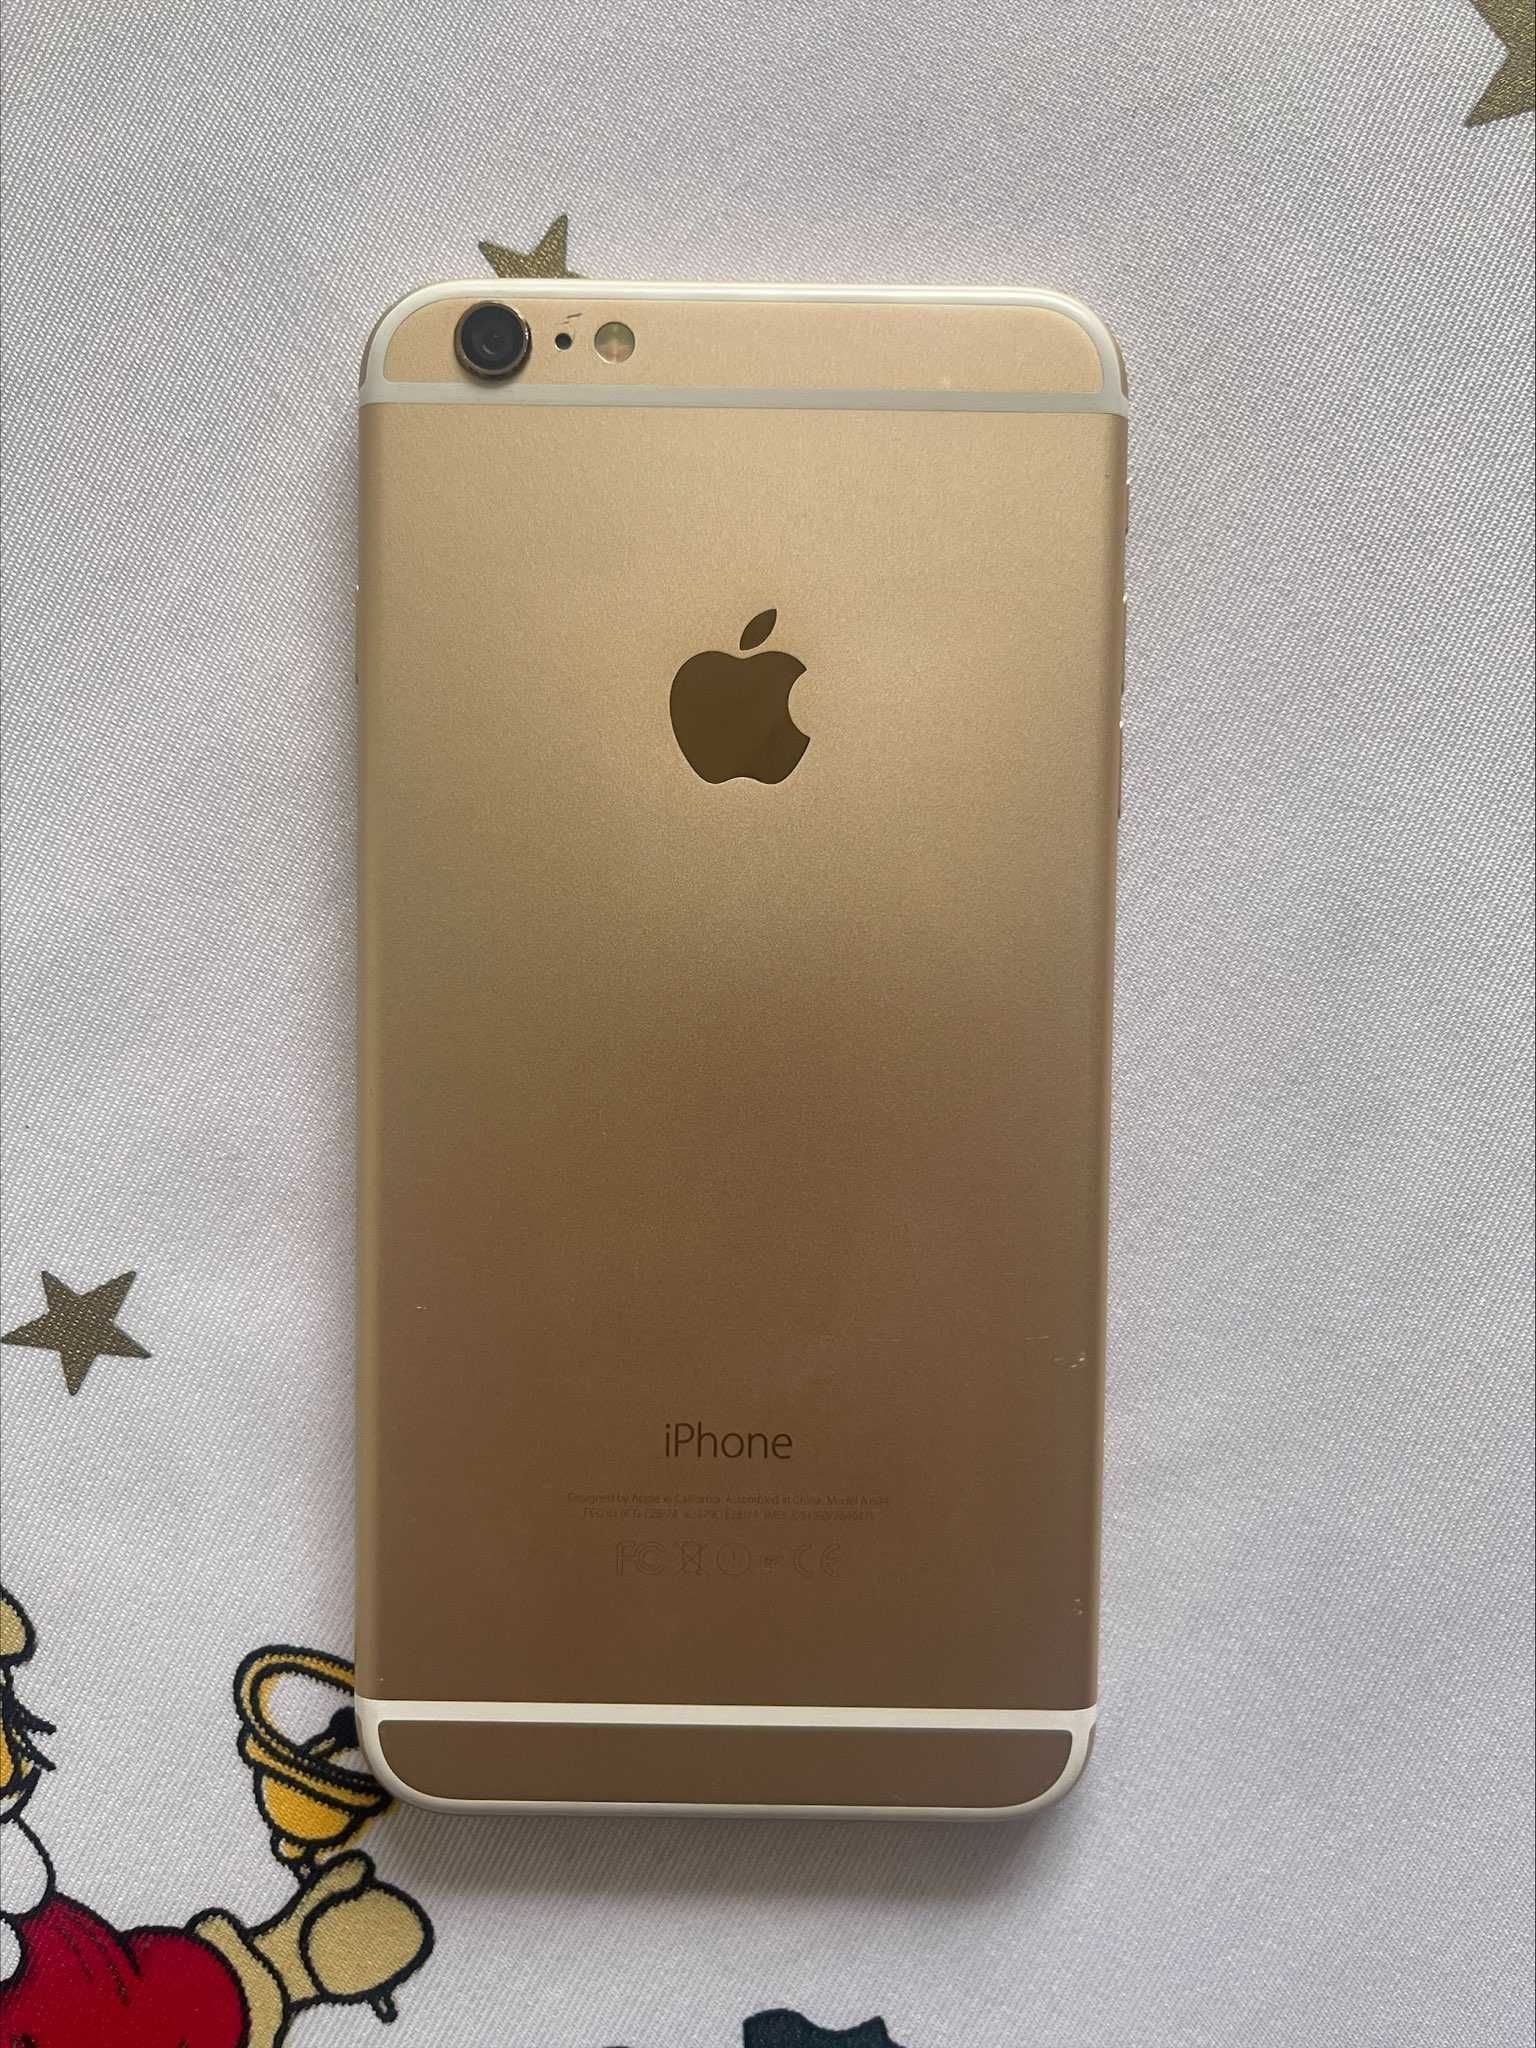 iPhone 6 Plus 64GB Gold – КАТО НОВ, БЕЗ ЗАБЕЛЕЖКИ!!!